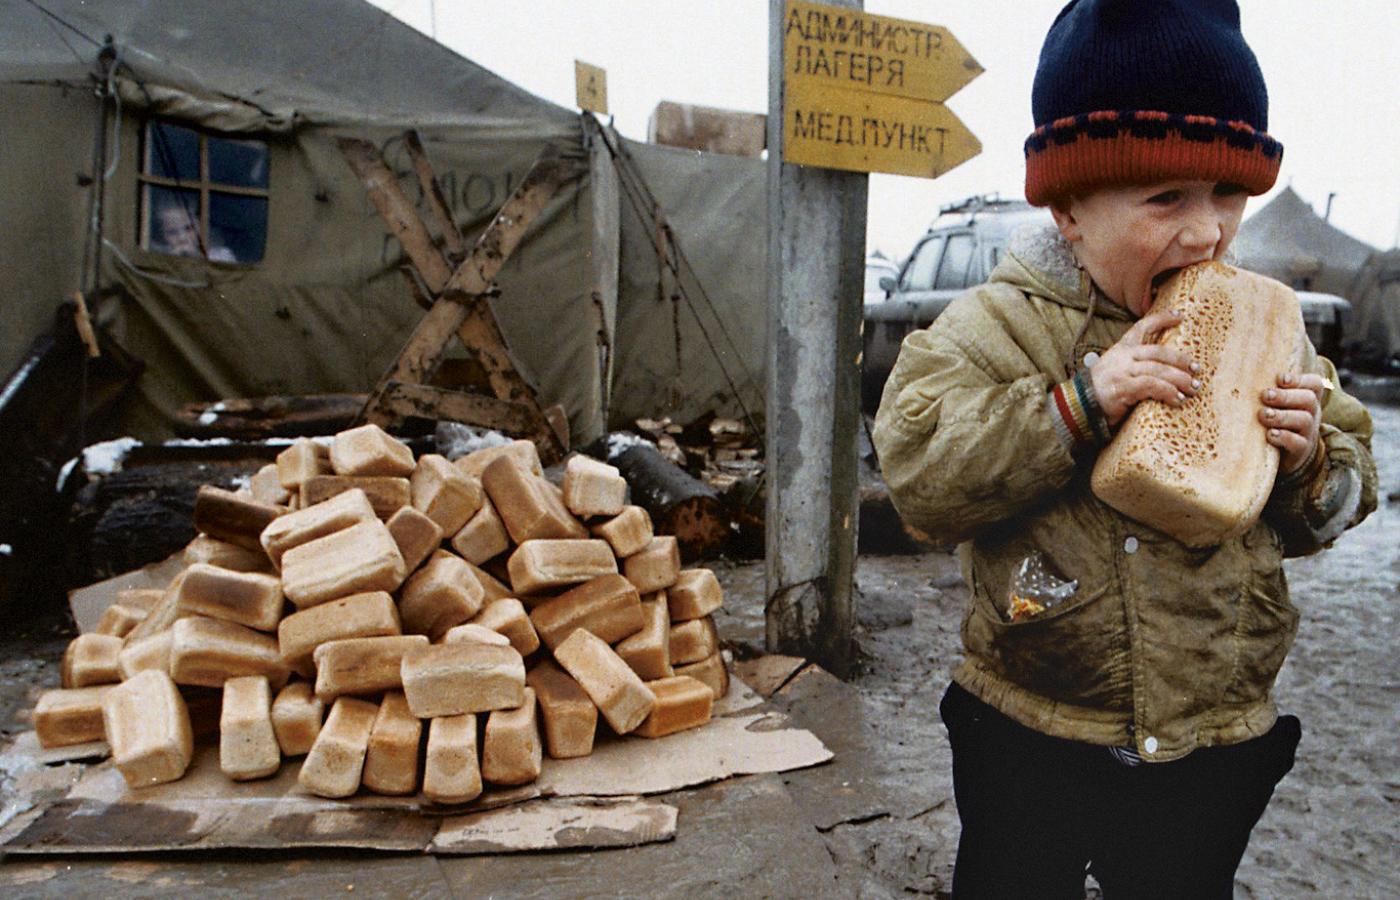 Obóz uchodźców Sputnik w miejscowości Slepcowskaja w Inguszetii. Dominującym uczuciem we wszystkich obozach jest głód.